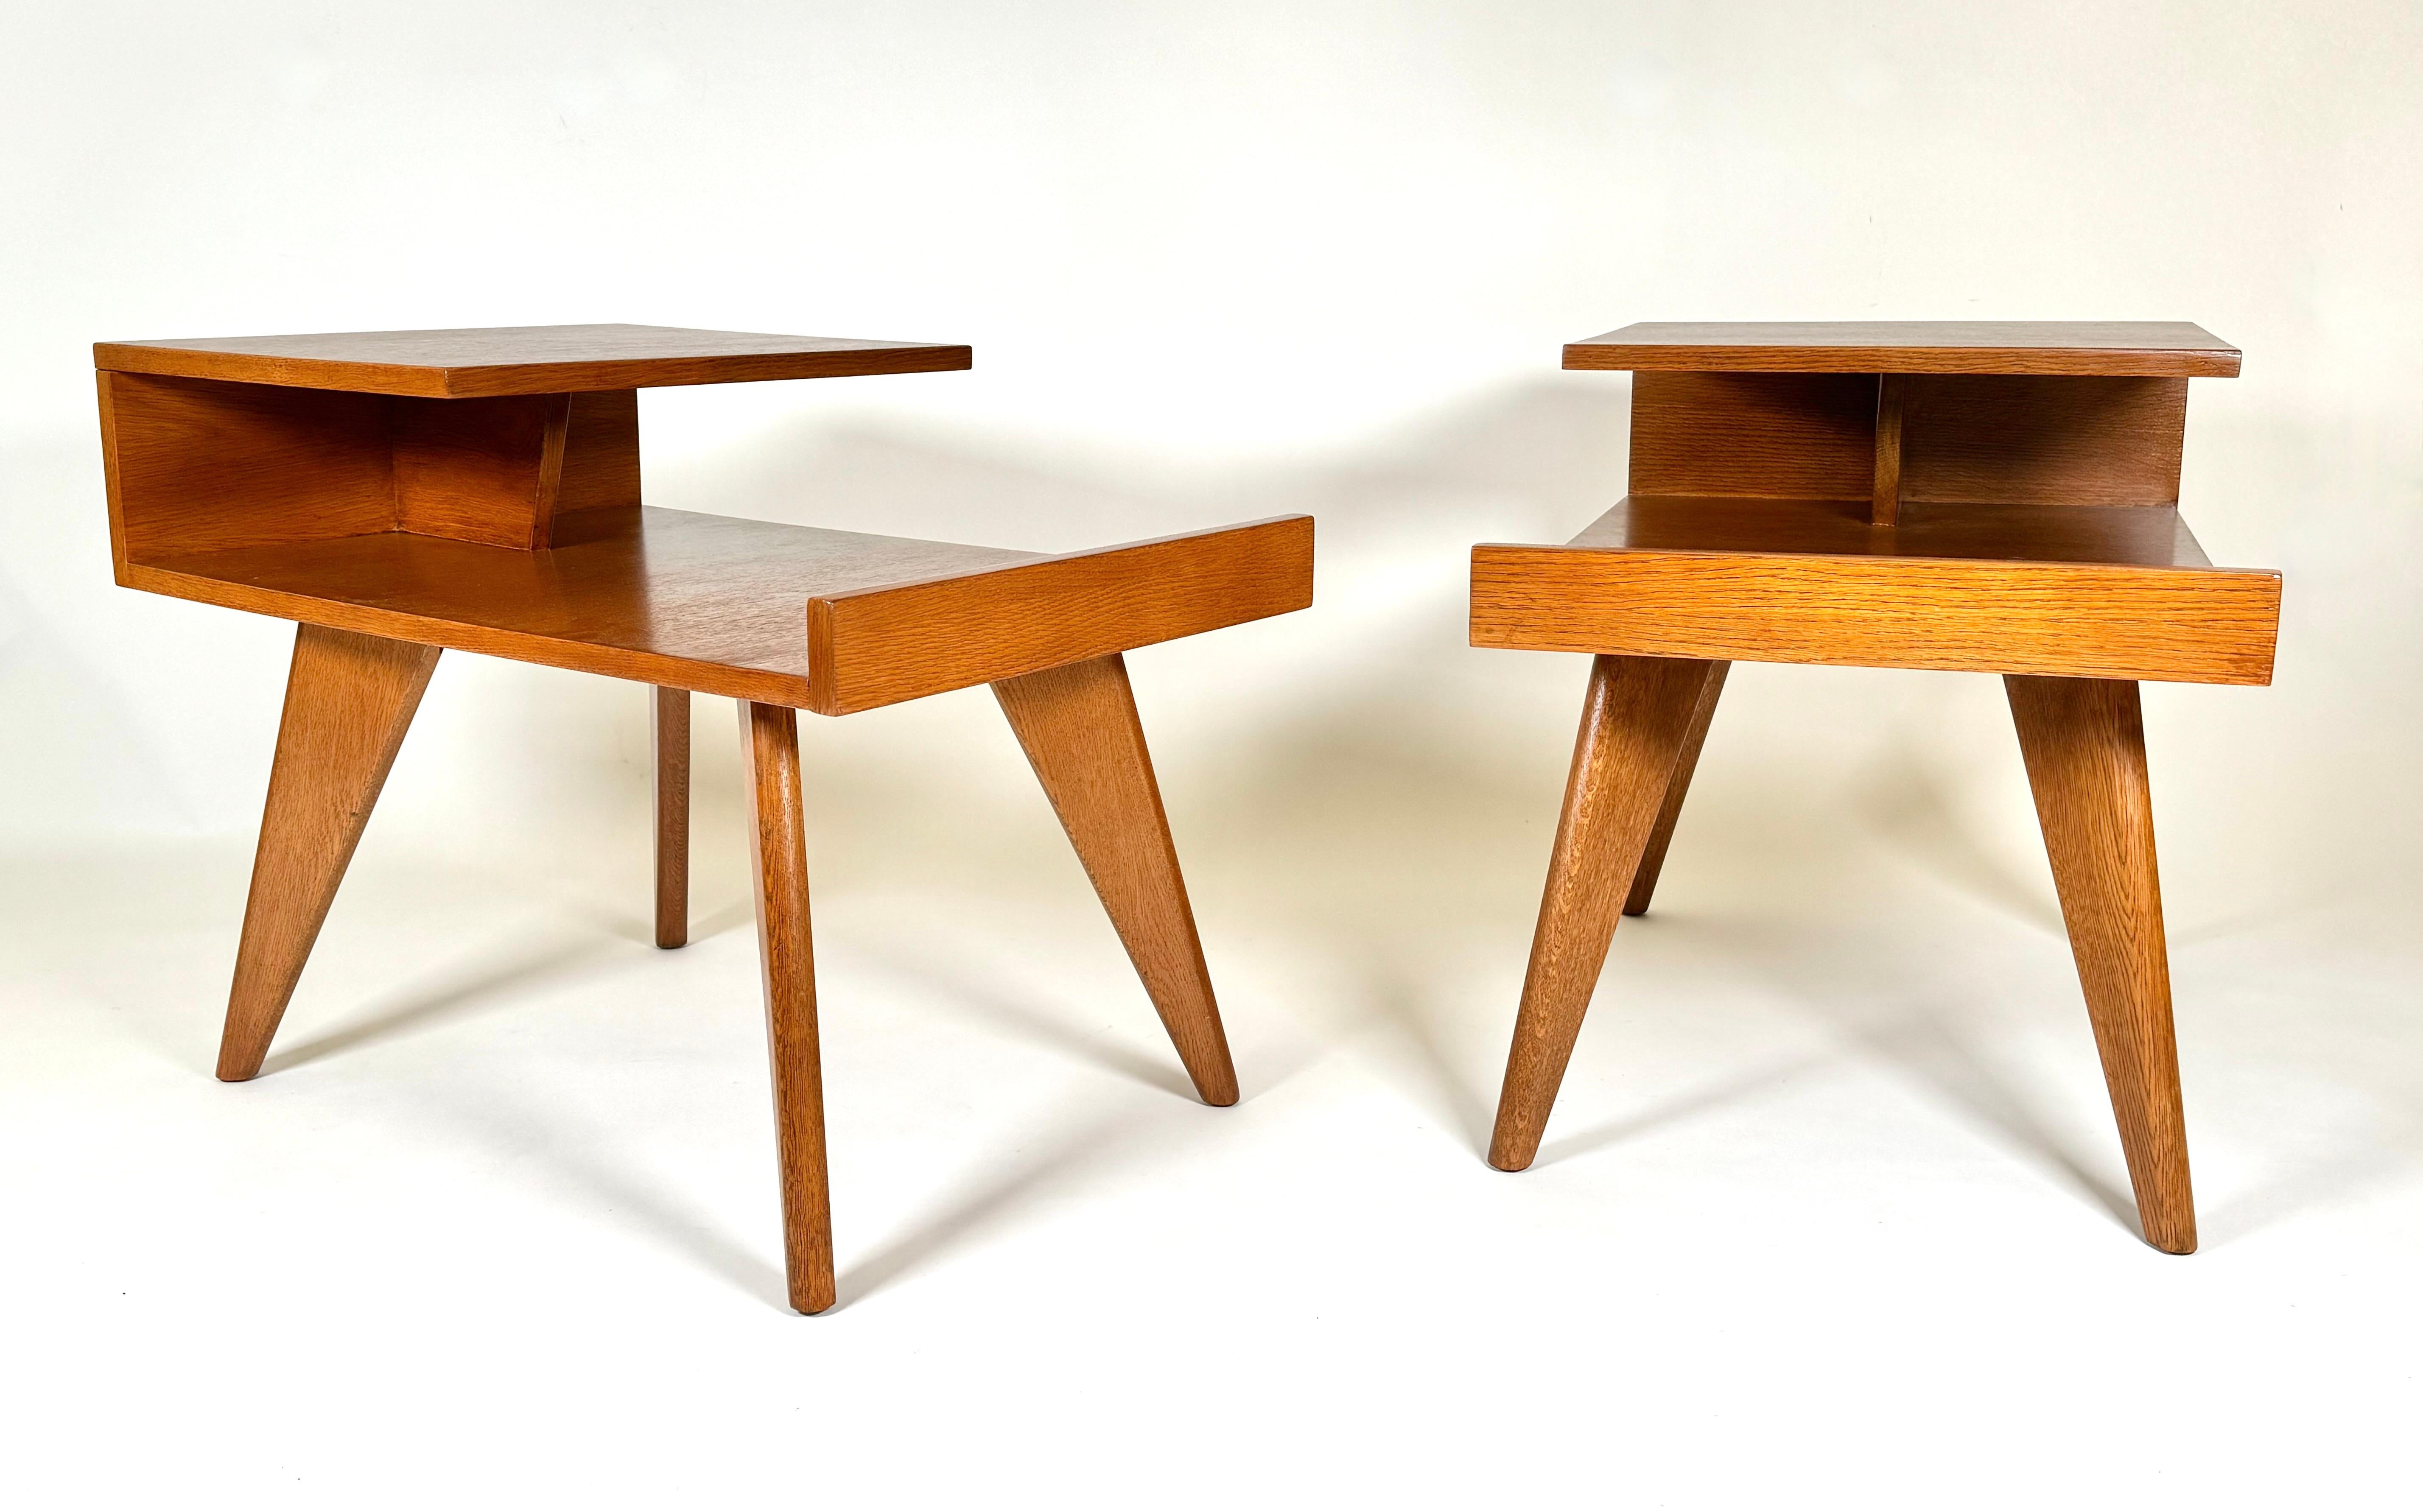 Ein früher Entwurf von American  Dan Johnson (1918-1979) für Hayden Hall Furniture, ein Paar Beistelltische aus Eichenholz mit freitragenden Platten und markanten dreieckigen Beinen. Seine frühen Entwürfe hatten starke architektonische Linien,